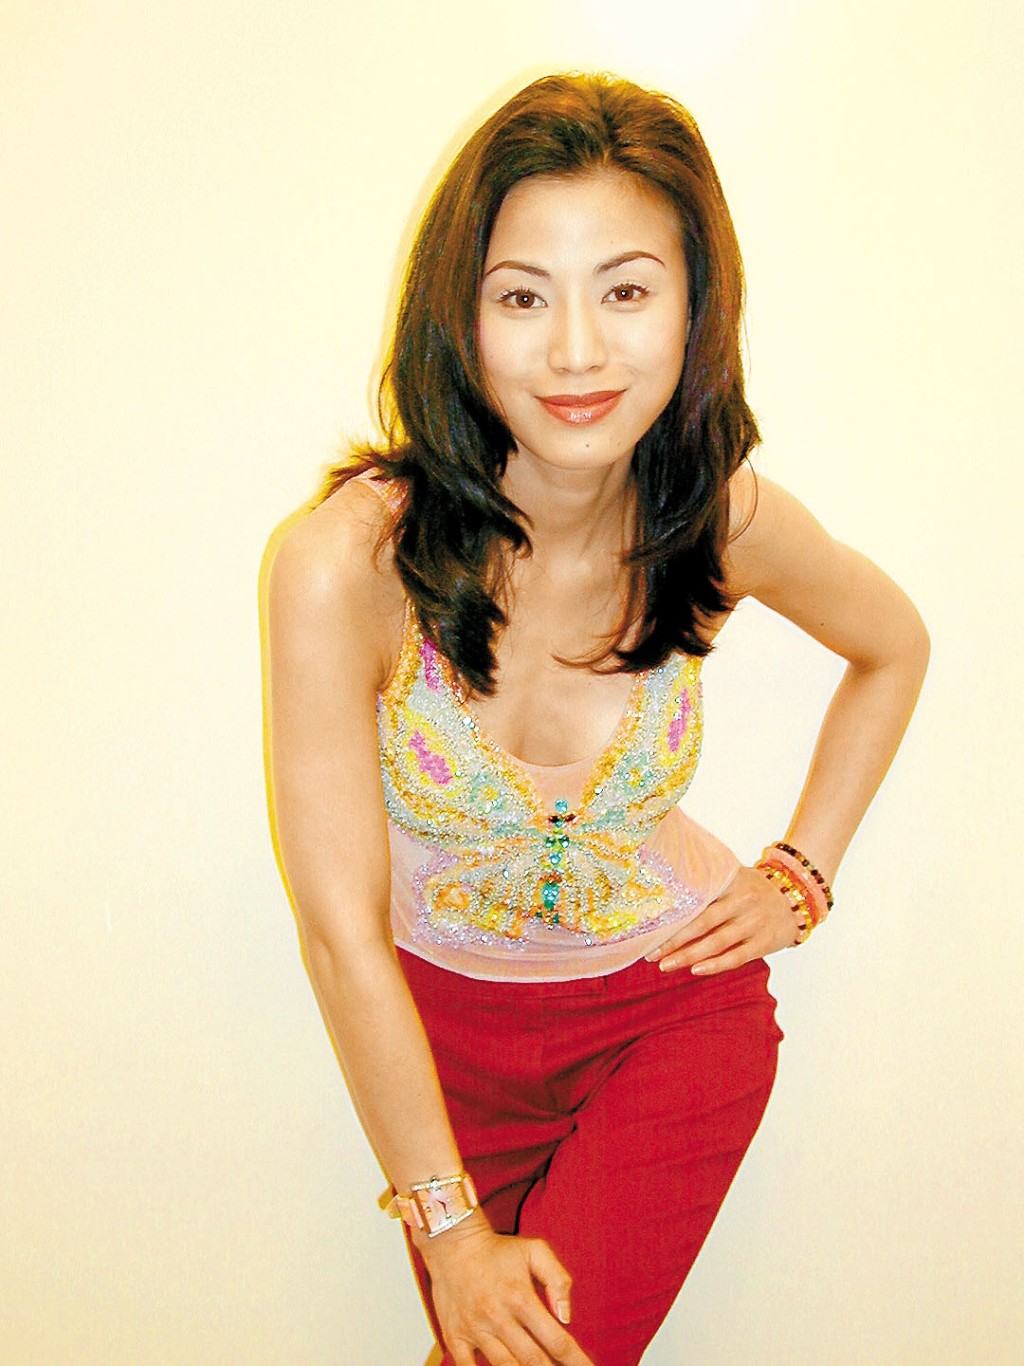 陳雅倫在1993年更曾推出性感寫真、拍三級電影《危情》，人氣隨即急升，成為當年的性感女神。